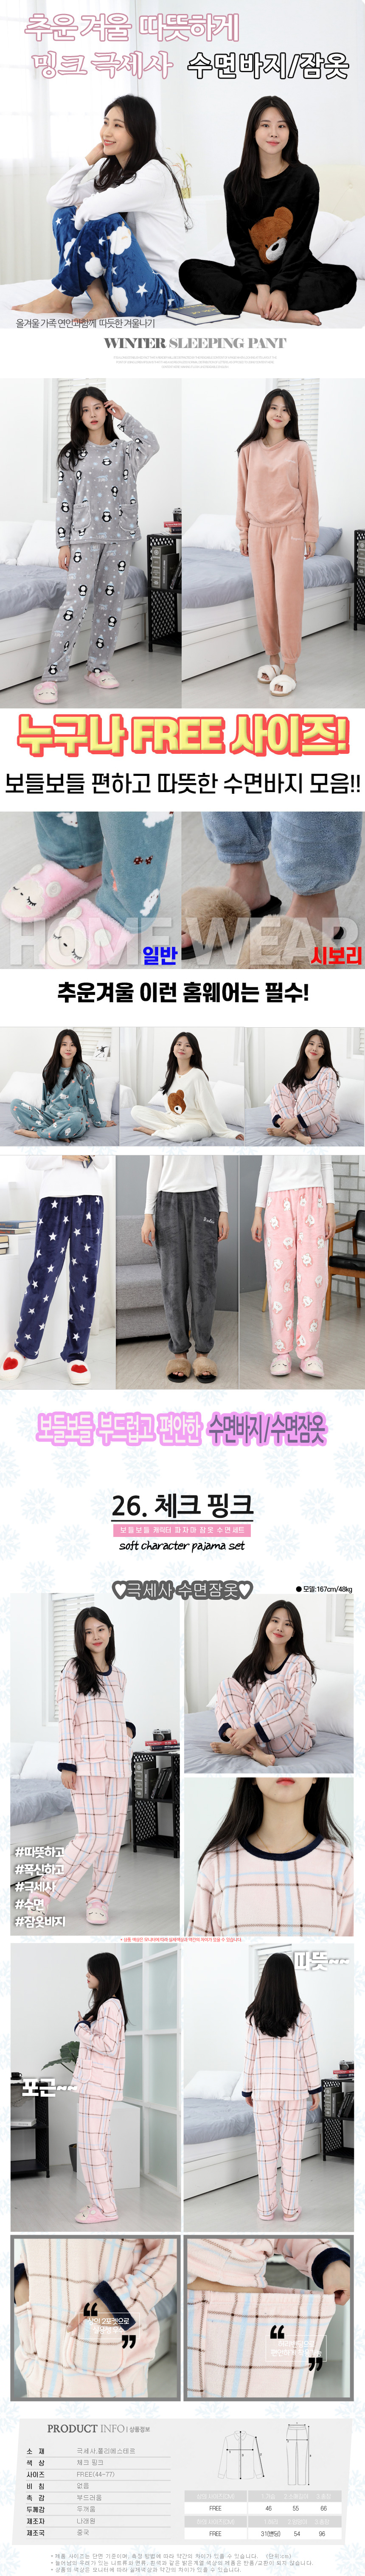 sleeping_pajamas_set_26.jpg